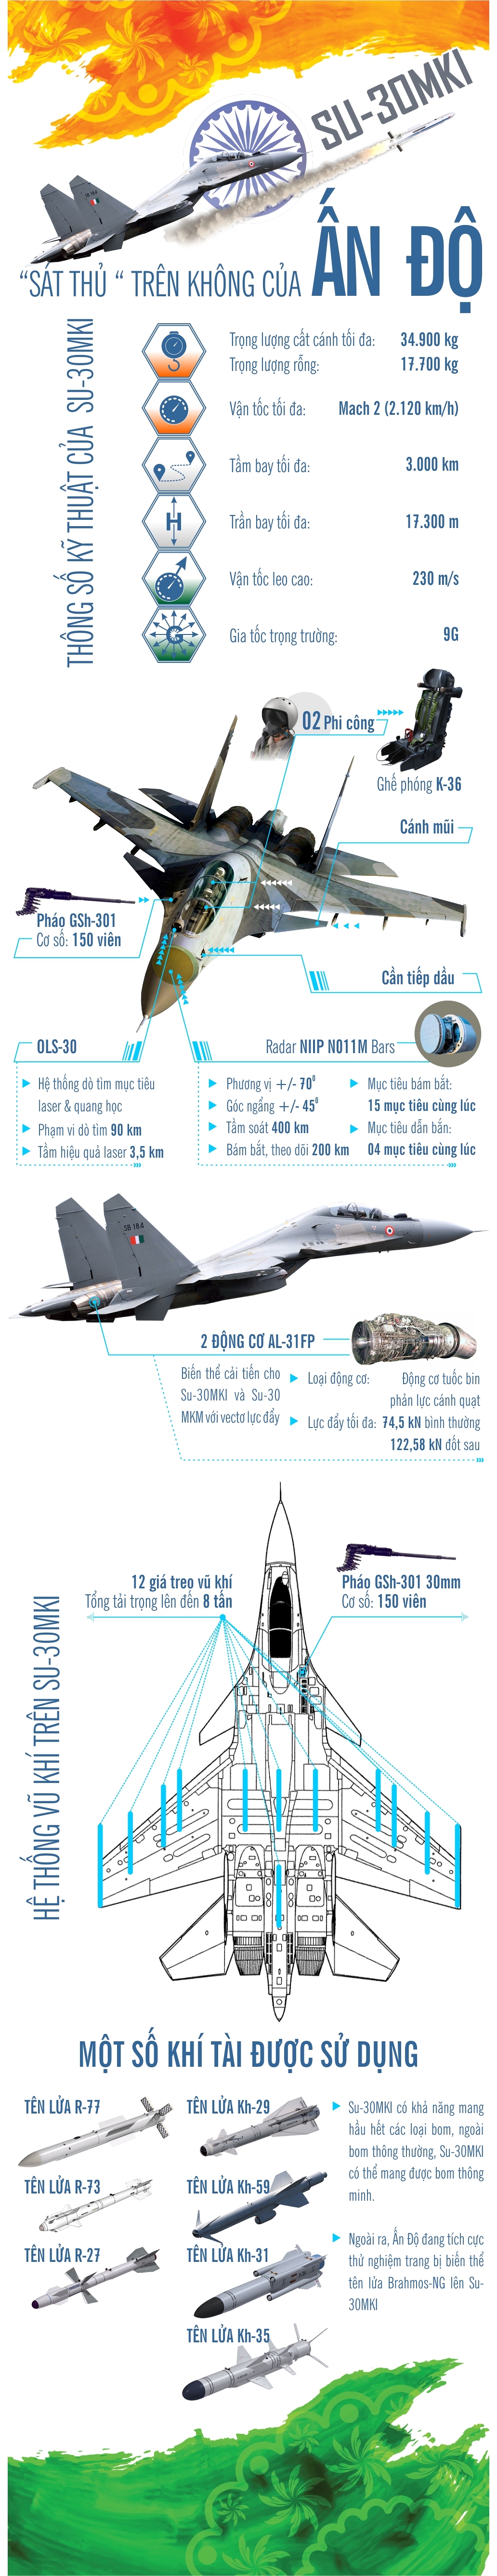 Infographic: Tiêm kích Su-30MKI - “sát thủ” trên không của Ấn Độ